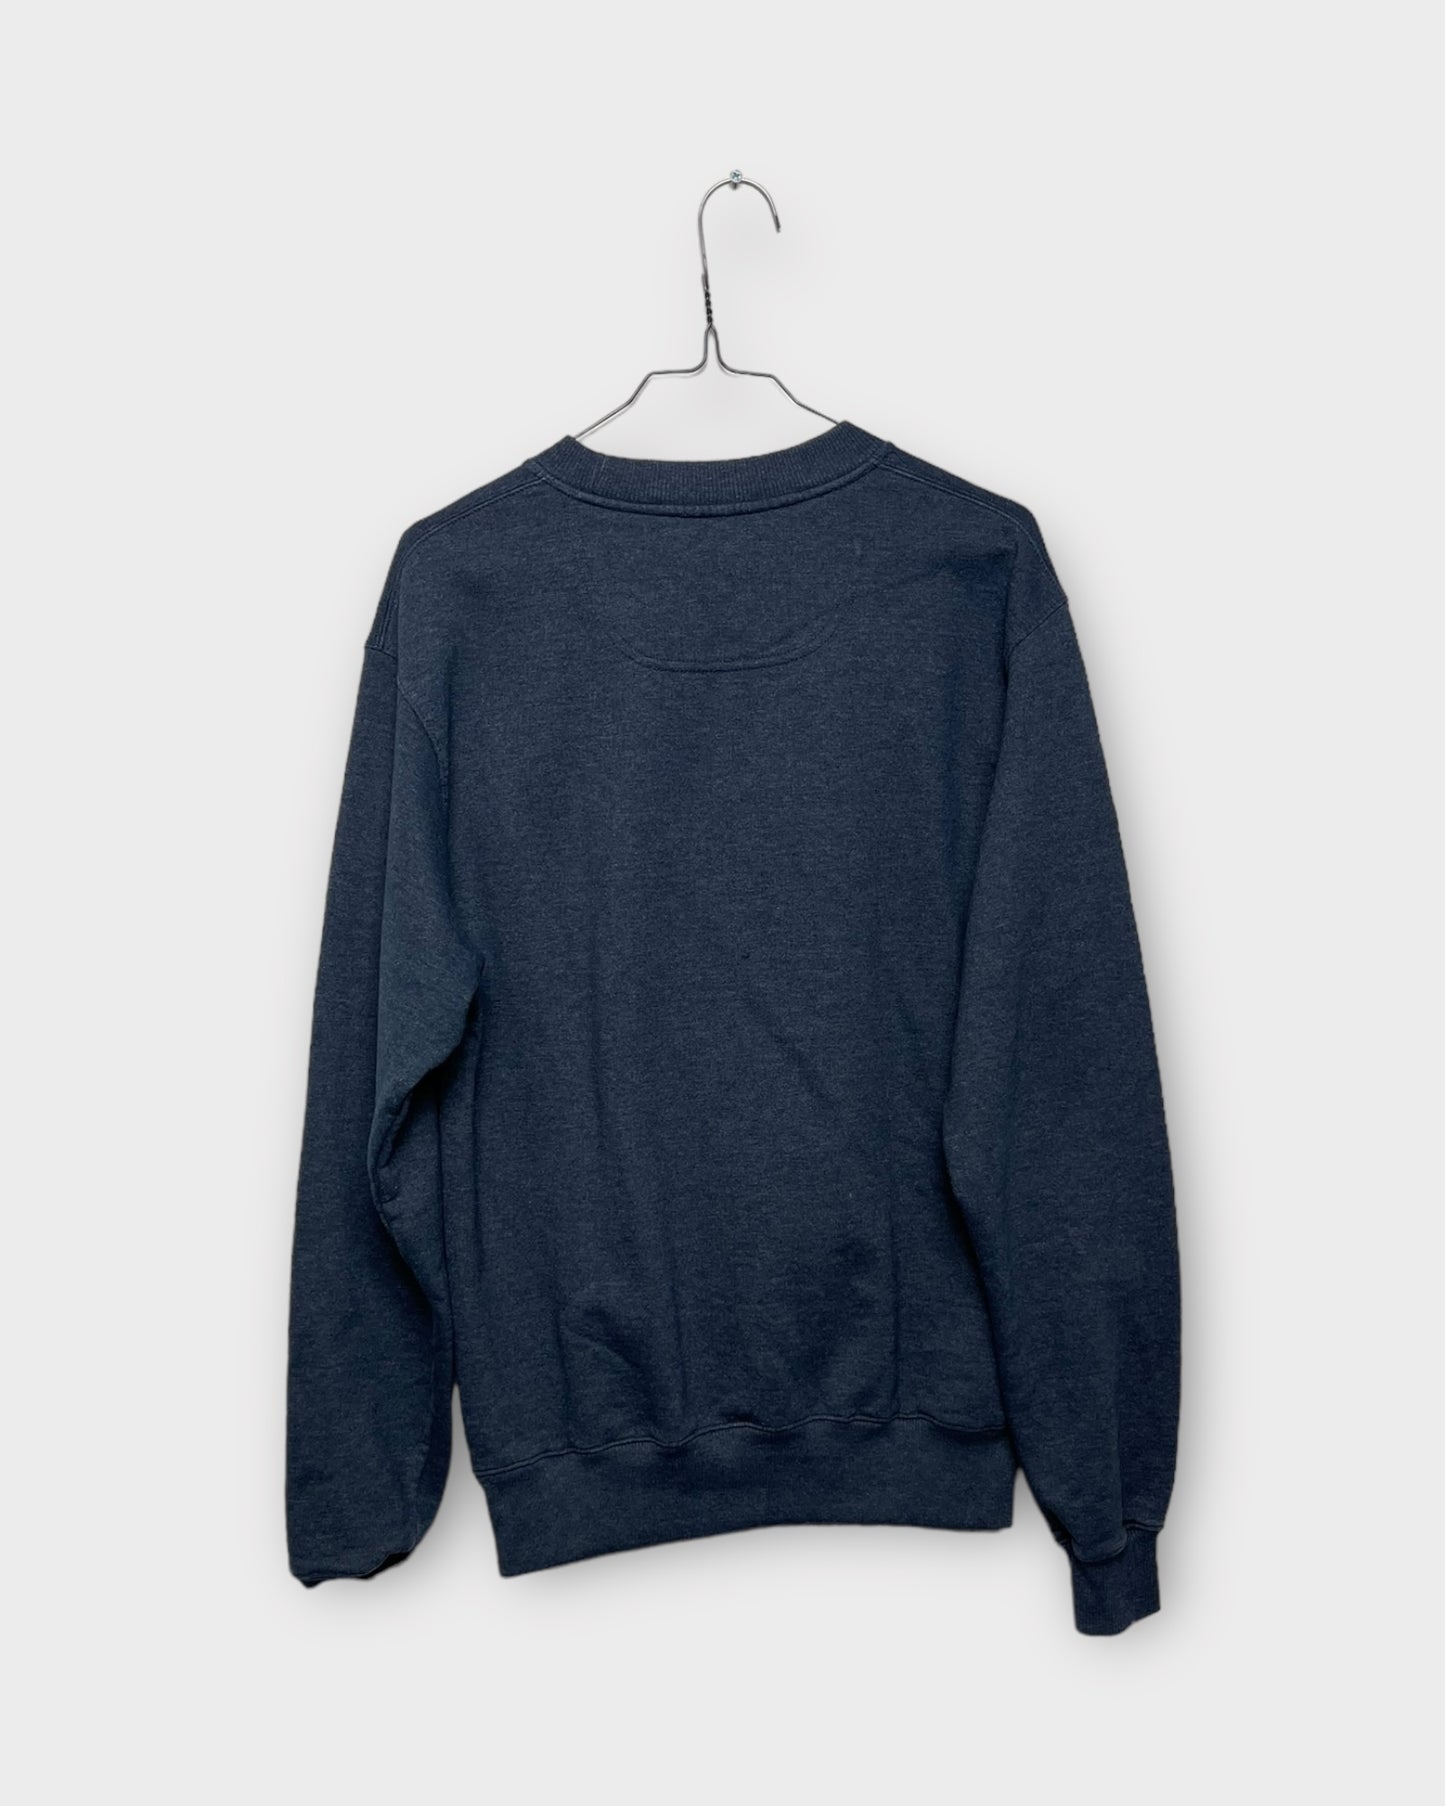 uniq Champion sweater - XL